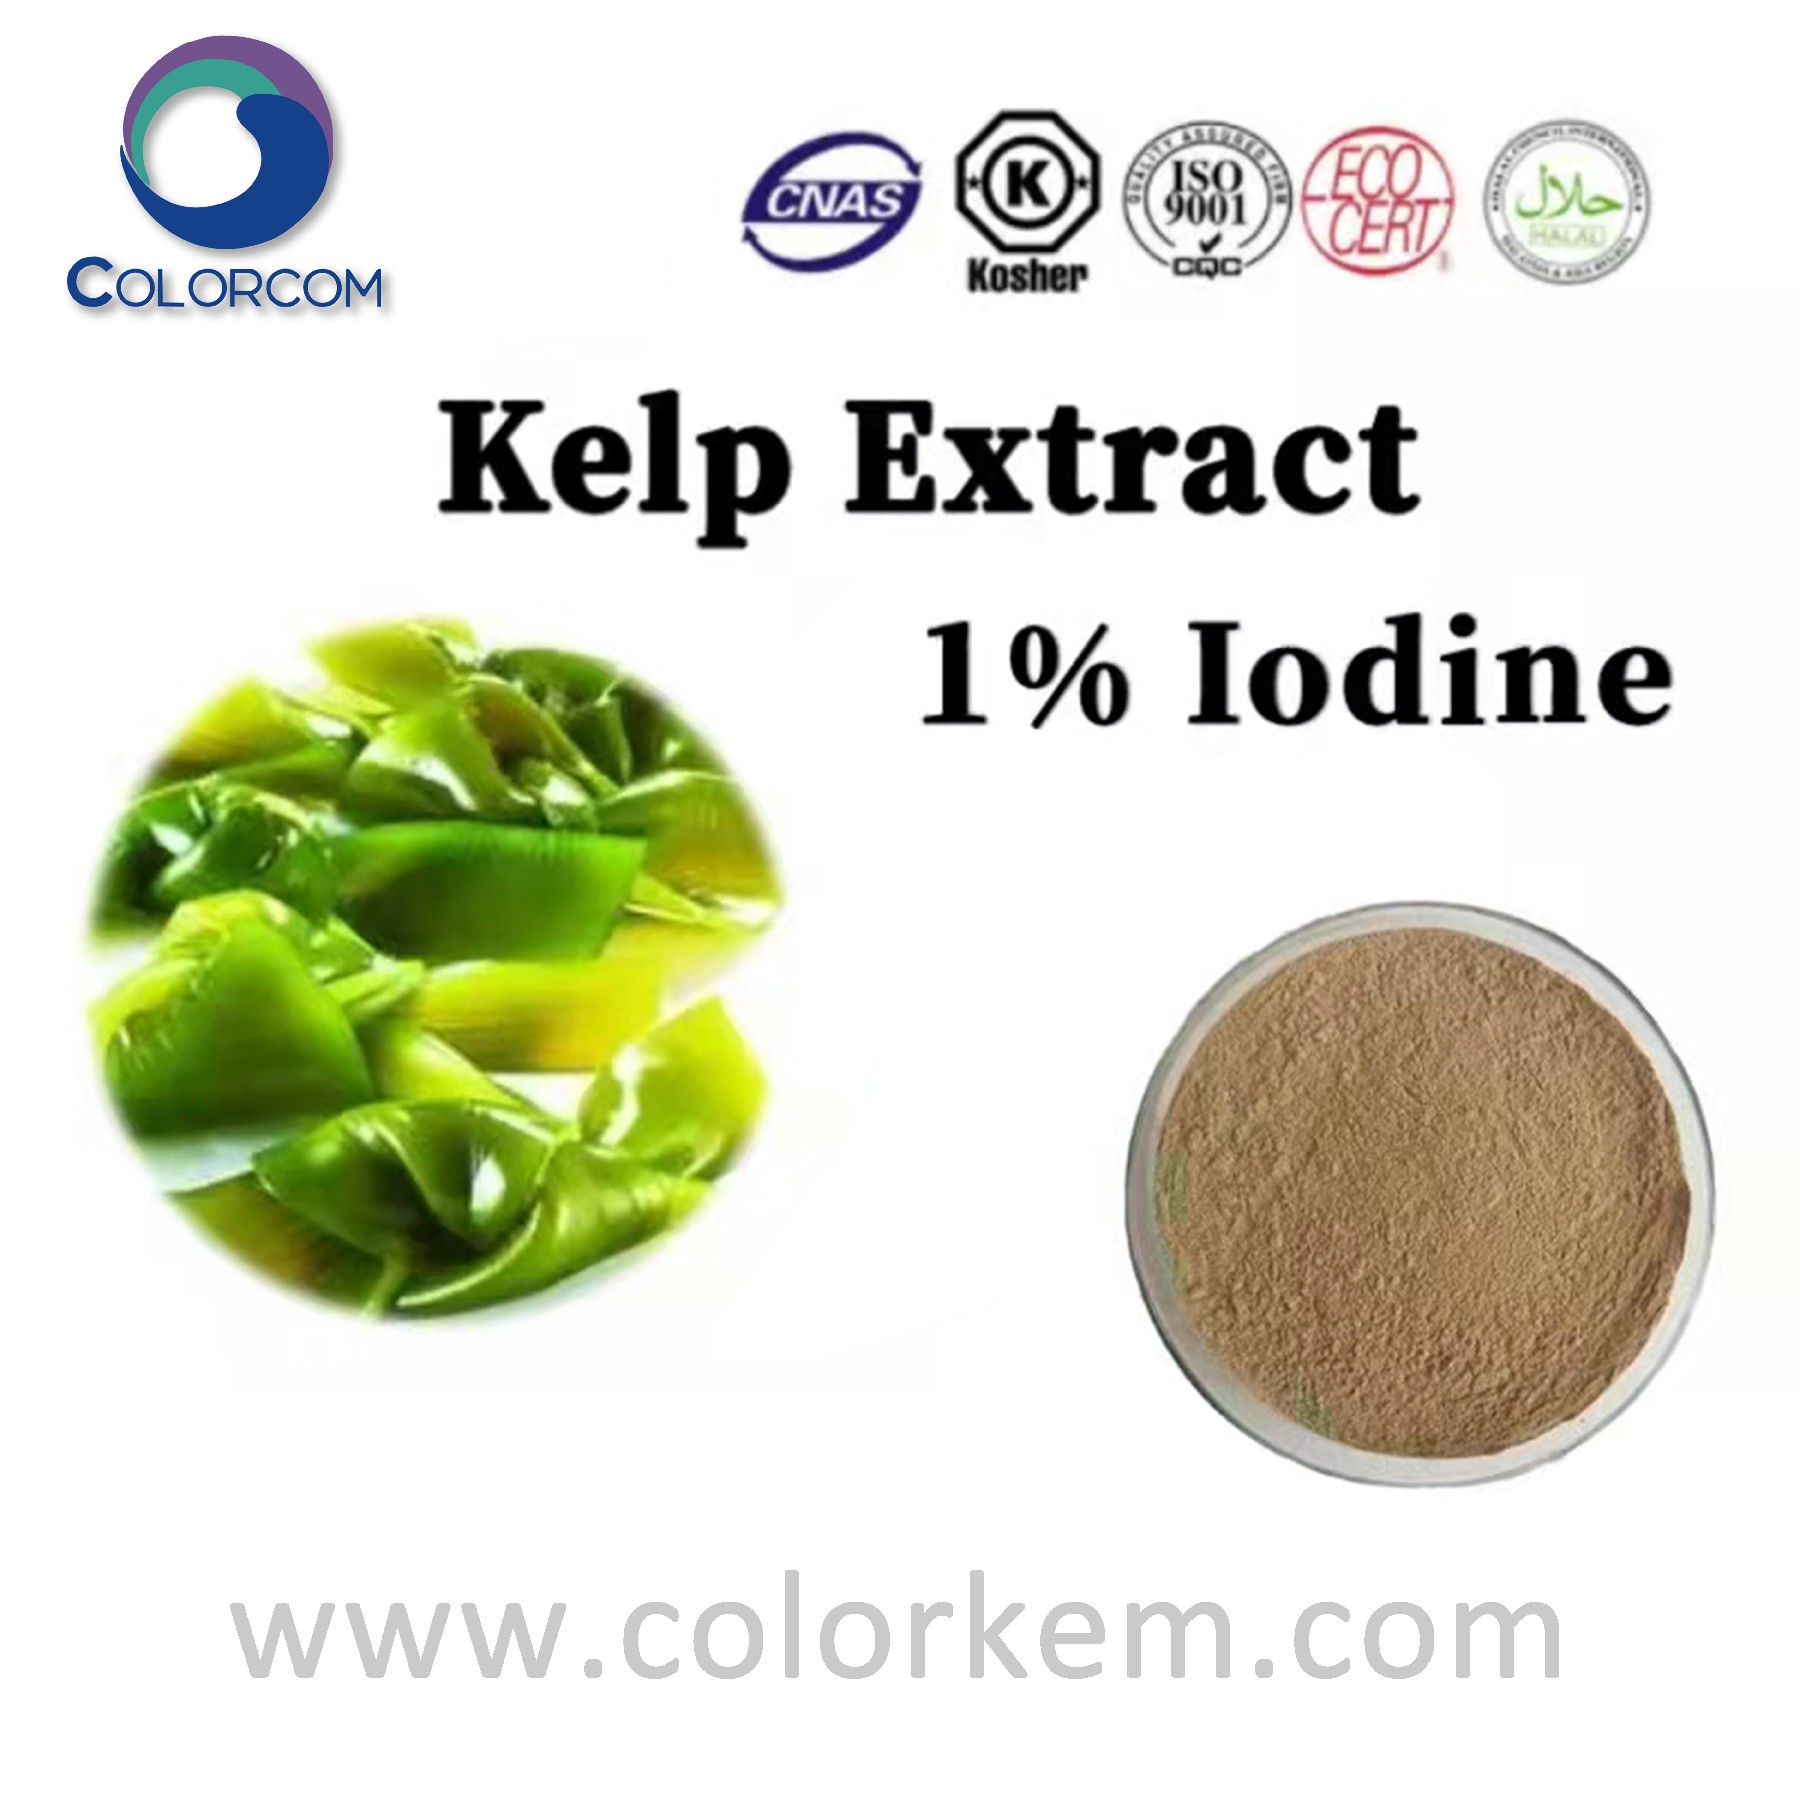 Kelp Extract 1Iodine